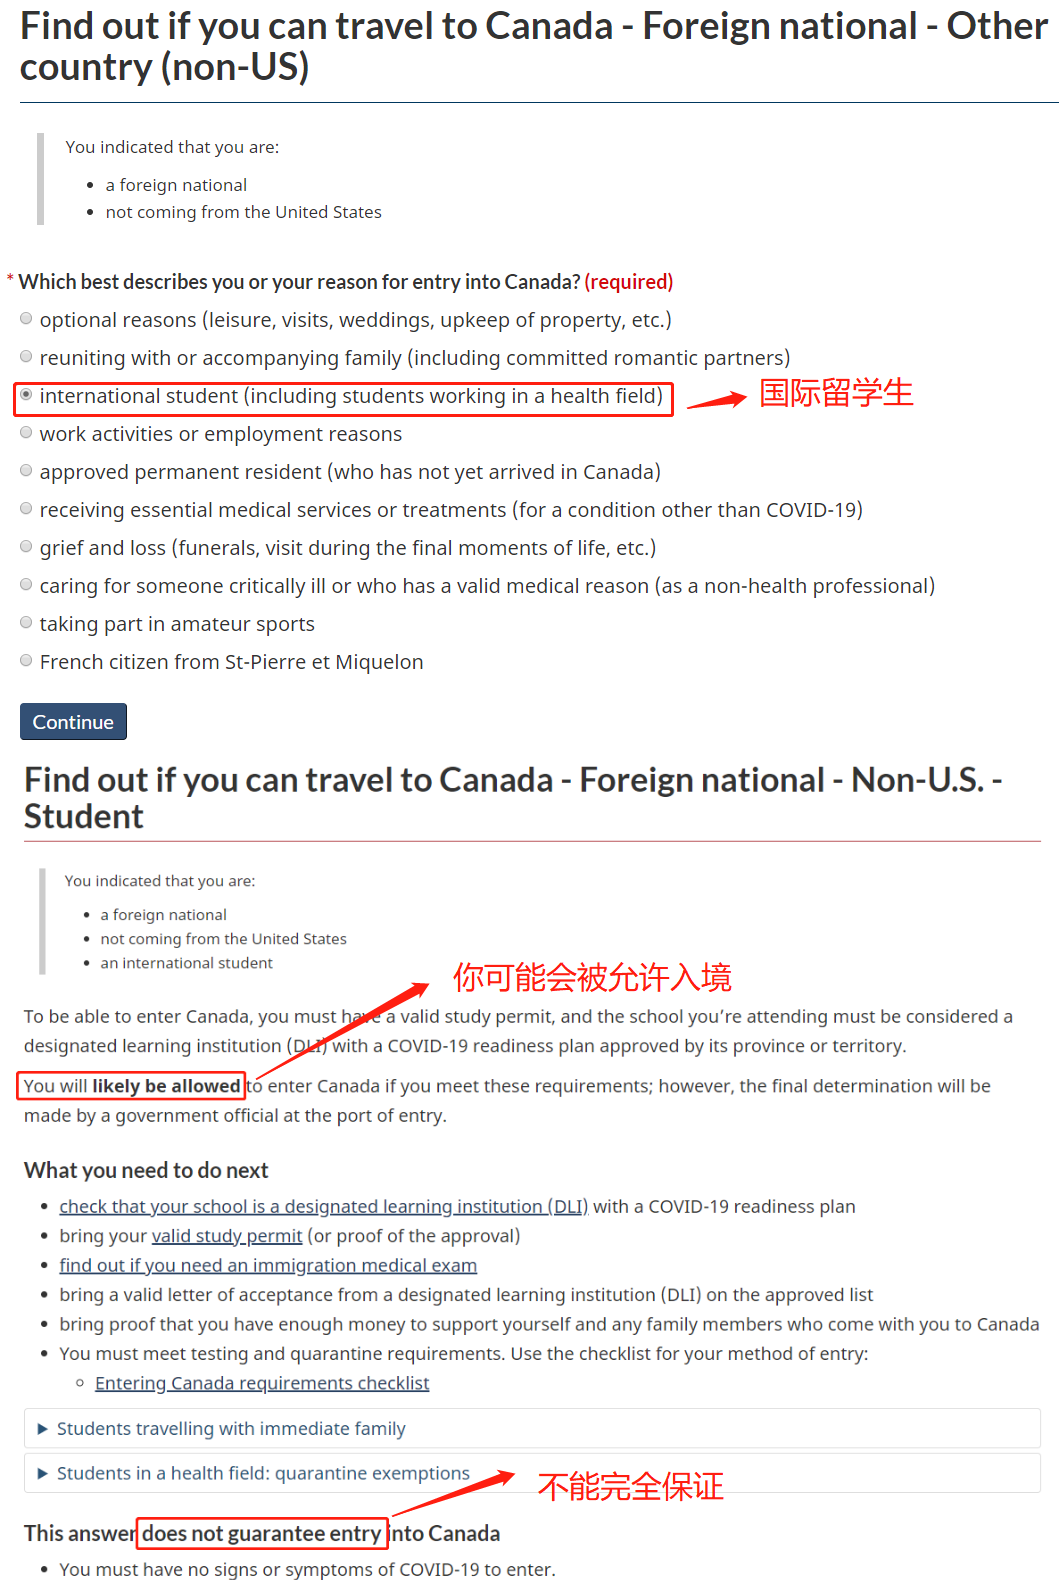 加拿大入境新政策正式启动！符合条件者可自由入境！